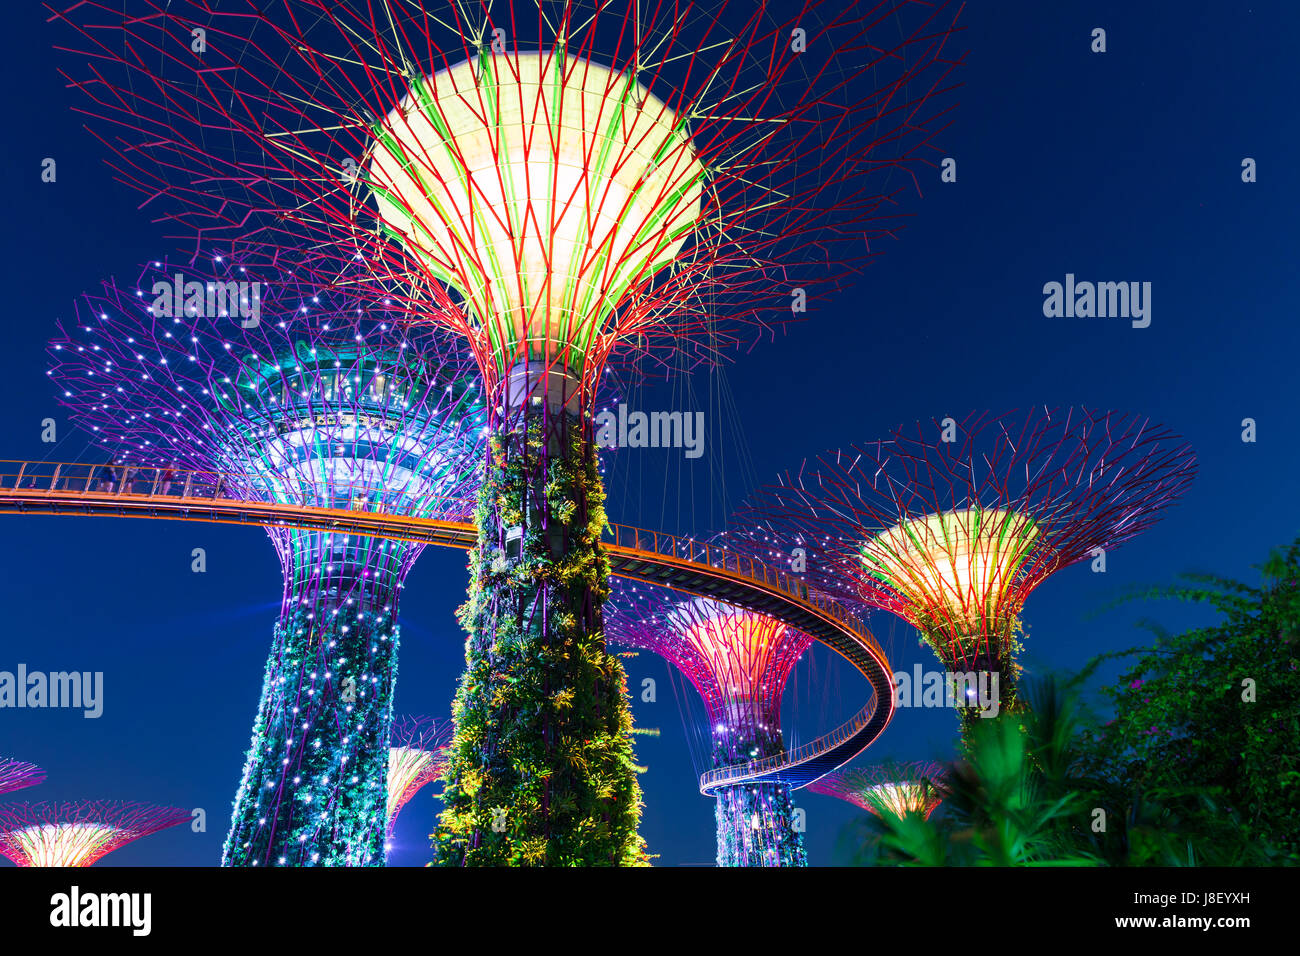 Singapour - Février 17, 2016 : Super Spectacle Léger à Rhapsody Tree Grove, jardins de la baie, à Singapour, le 17 février 2016. Banque D'Images